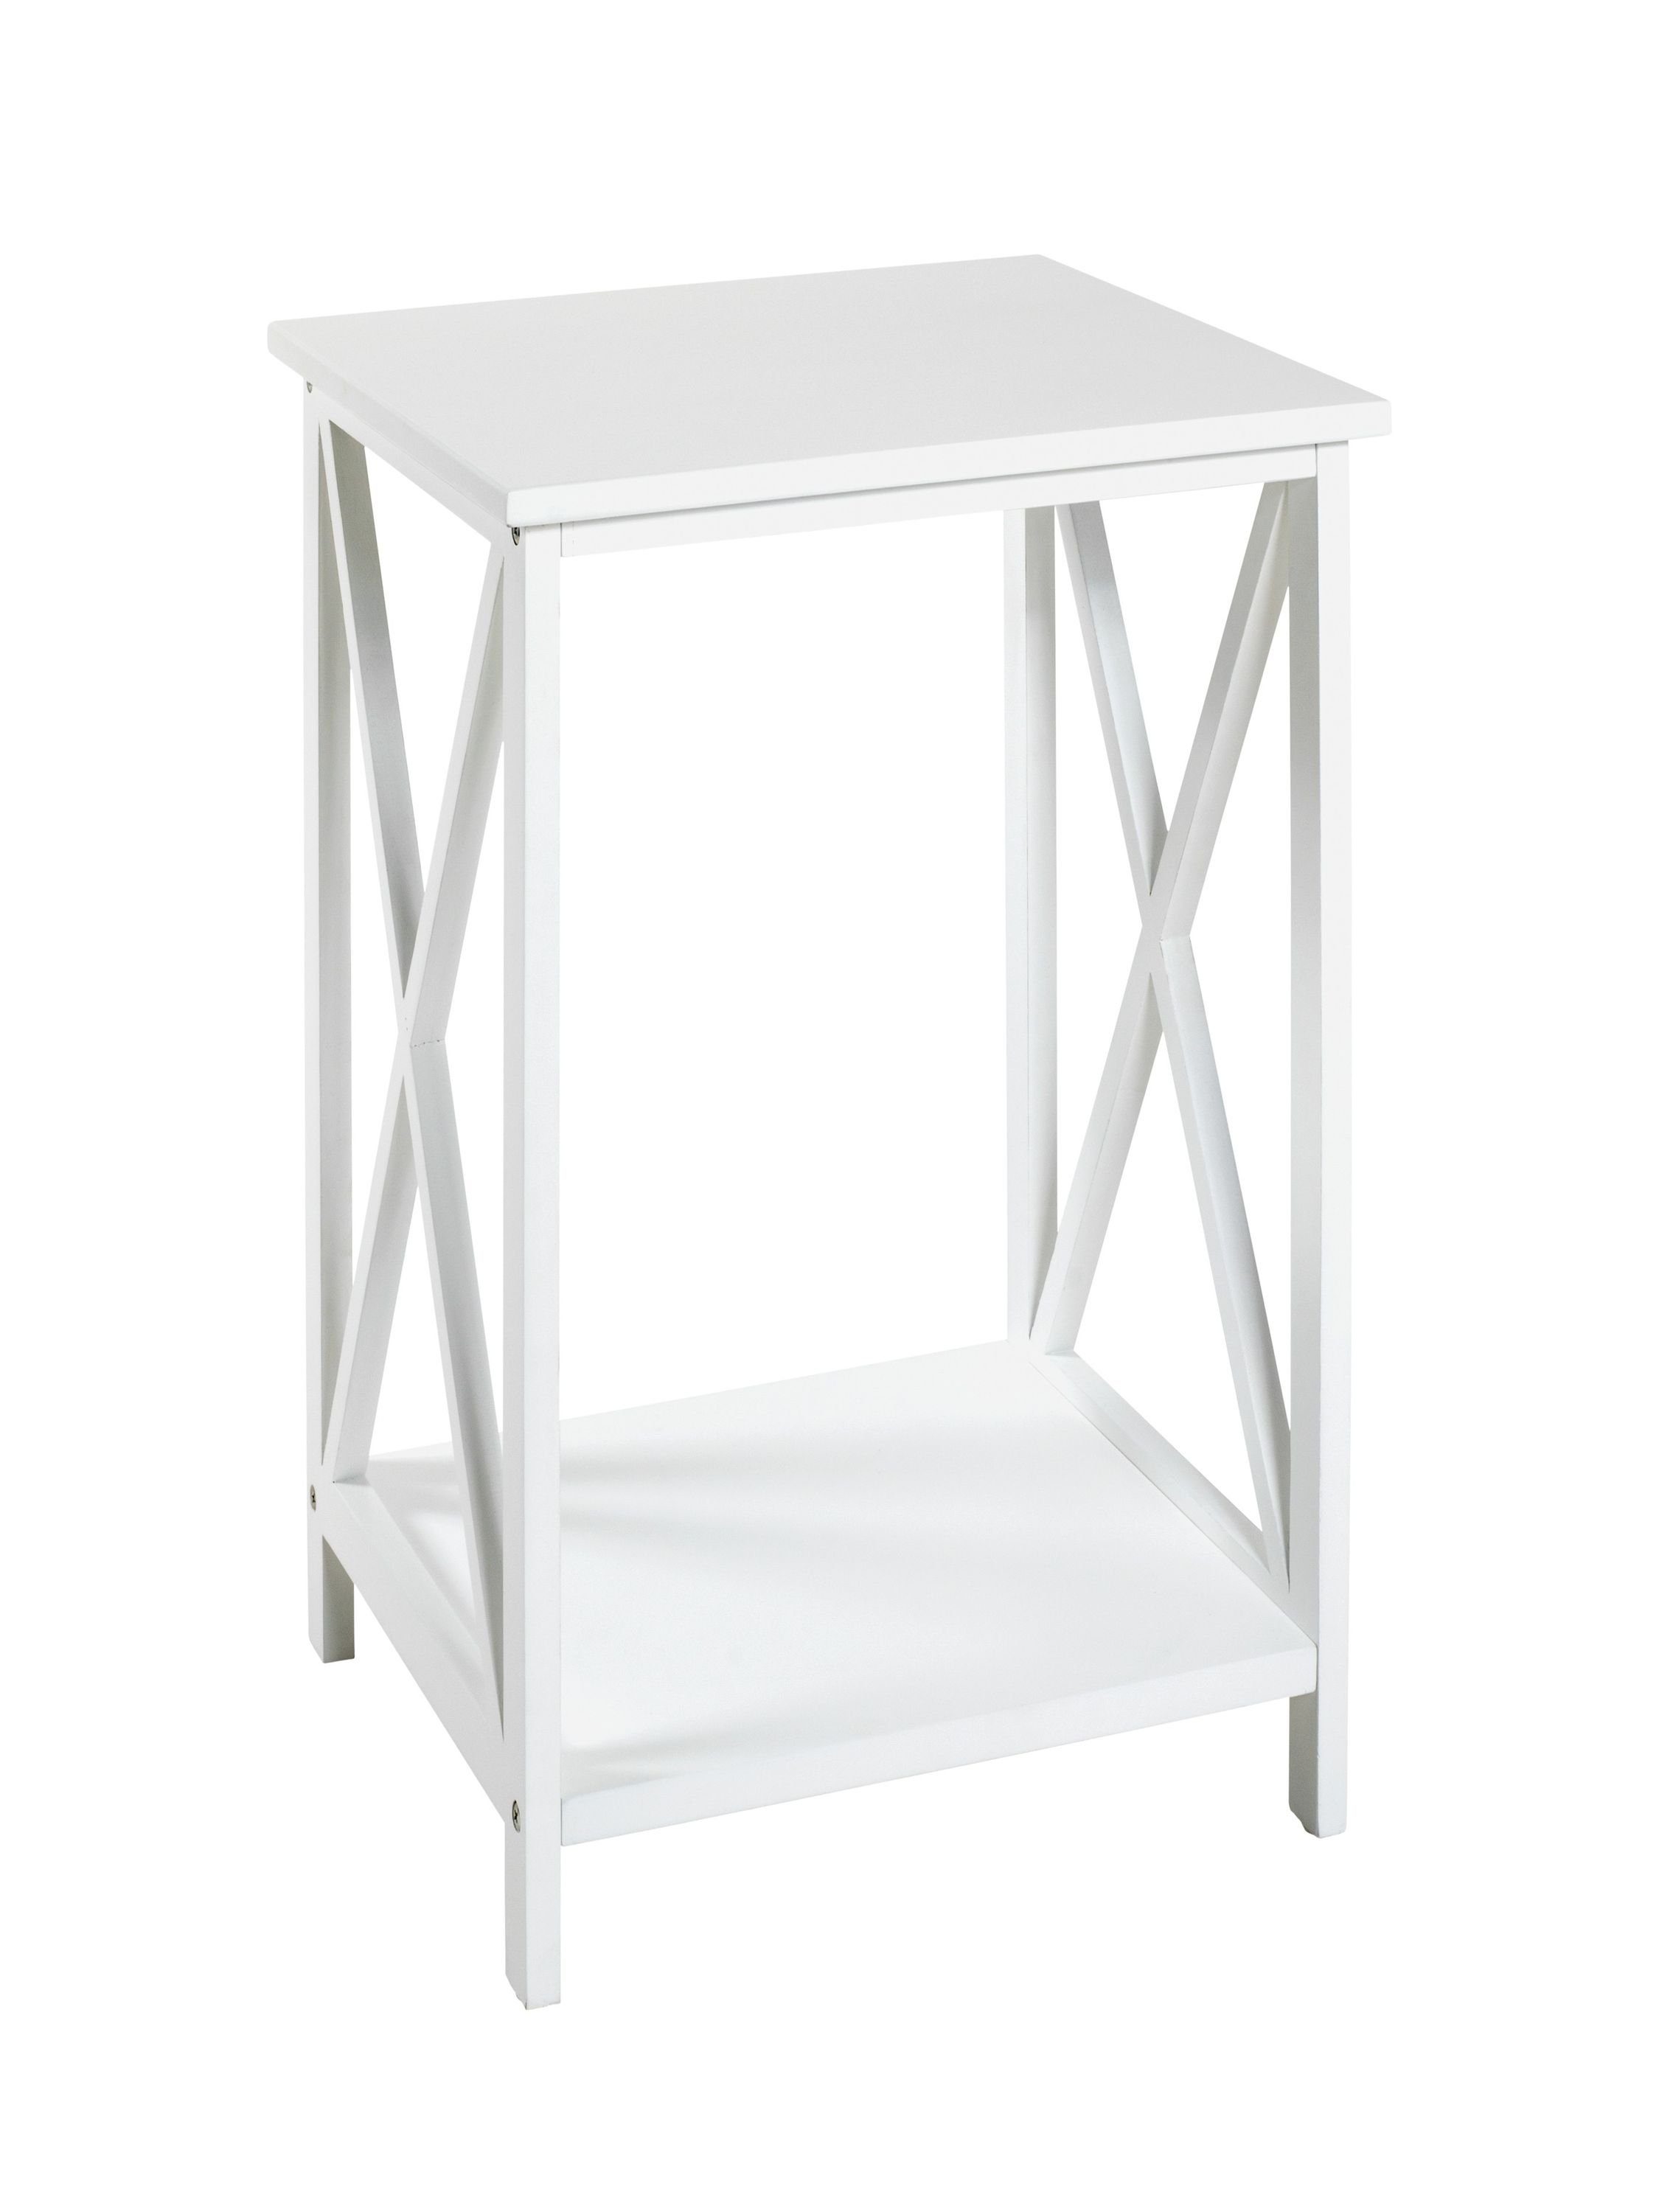 HAKU Beistelltisch Beistelltisch, HAKU Möbel Beistelltisch (BHT 30x50x30 cm) BHT 30x50x30 cm weiß